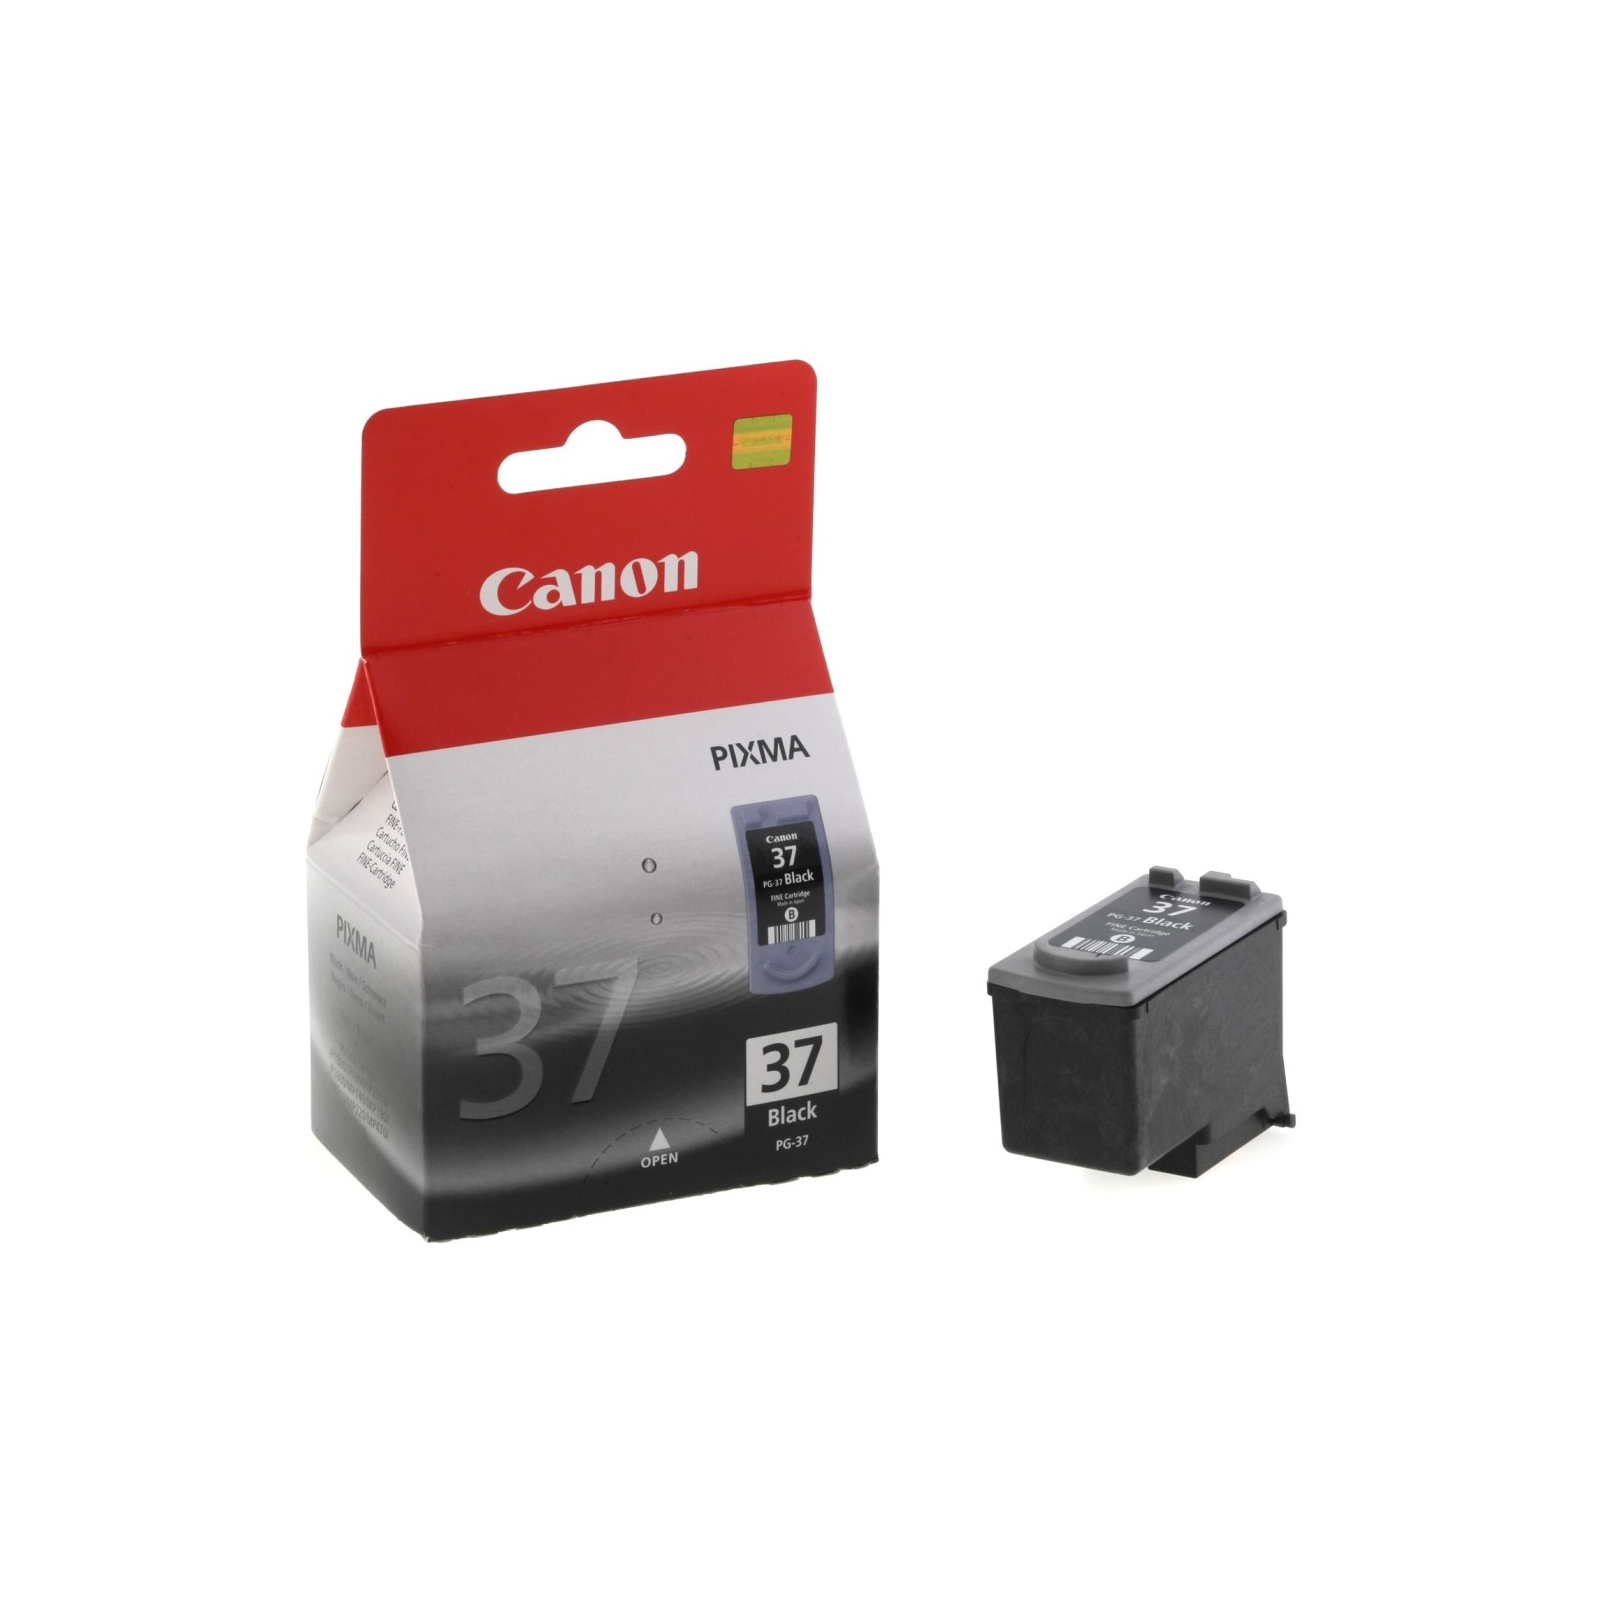 Картридж Canon PG-37 Black (2145B001/2145B005/21450001)